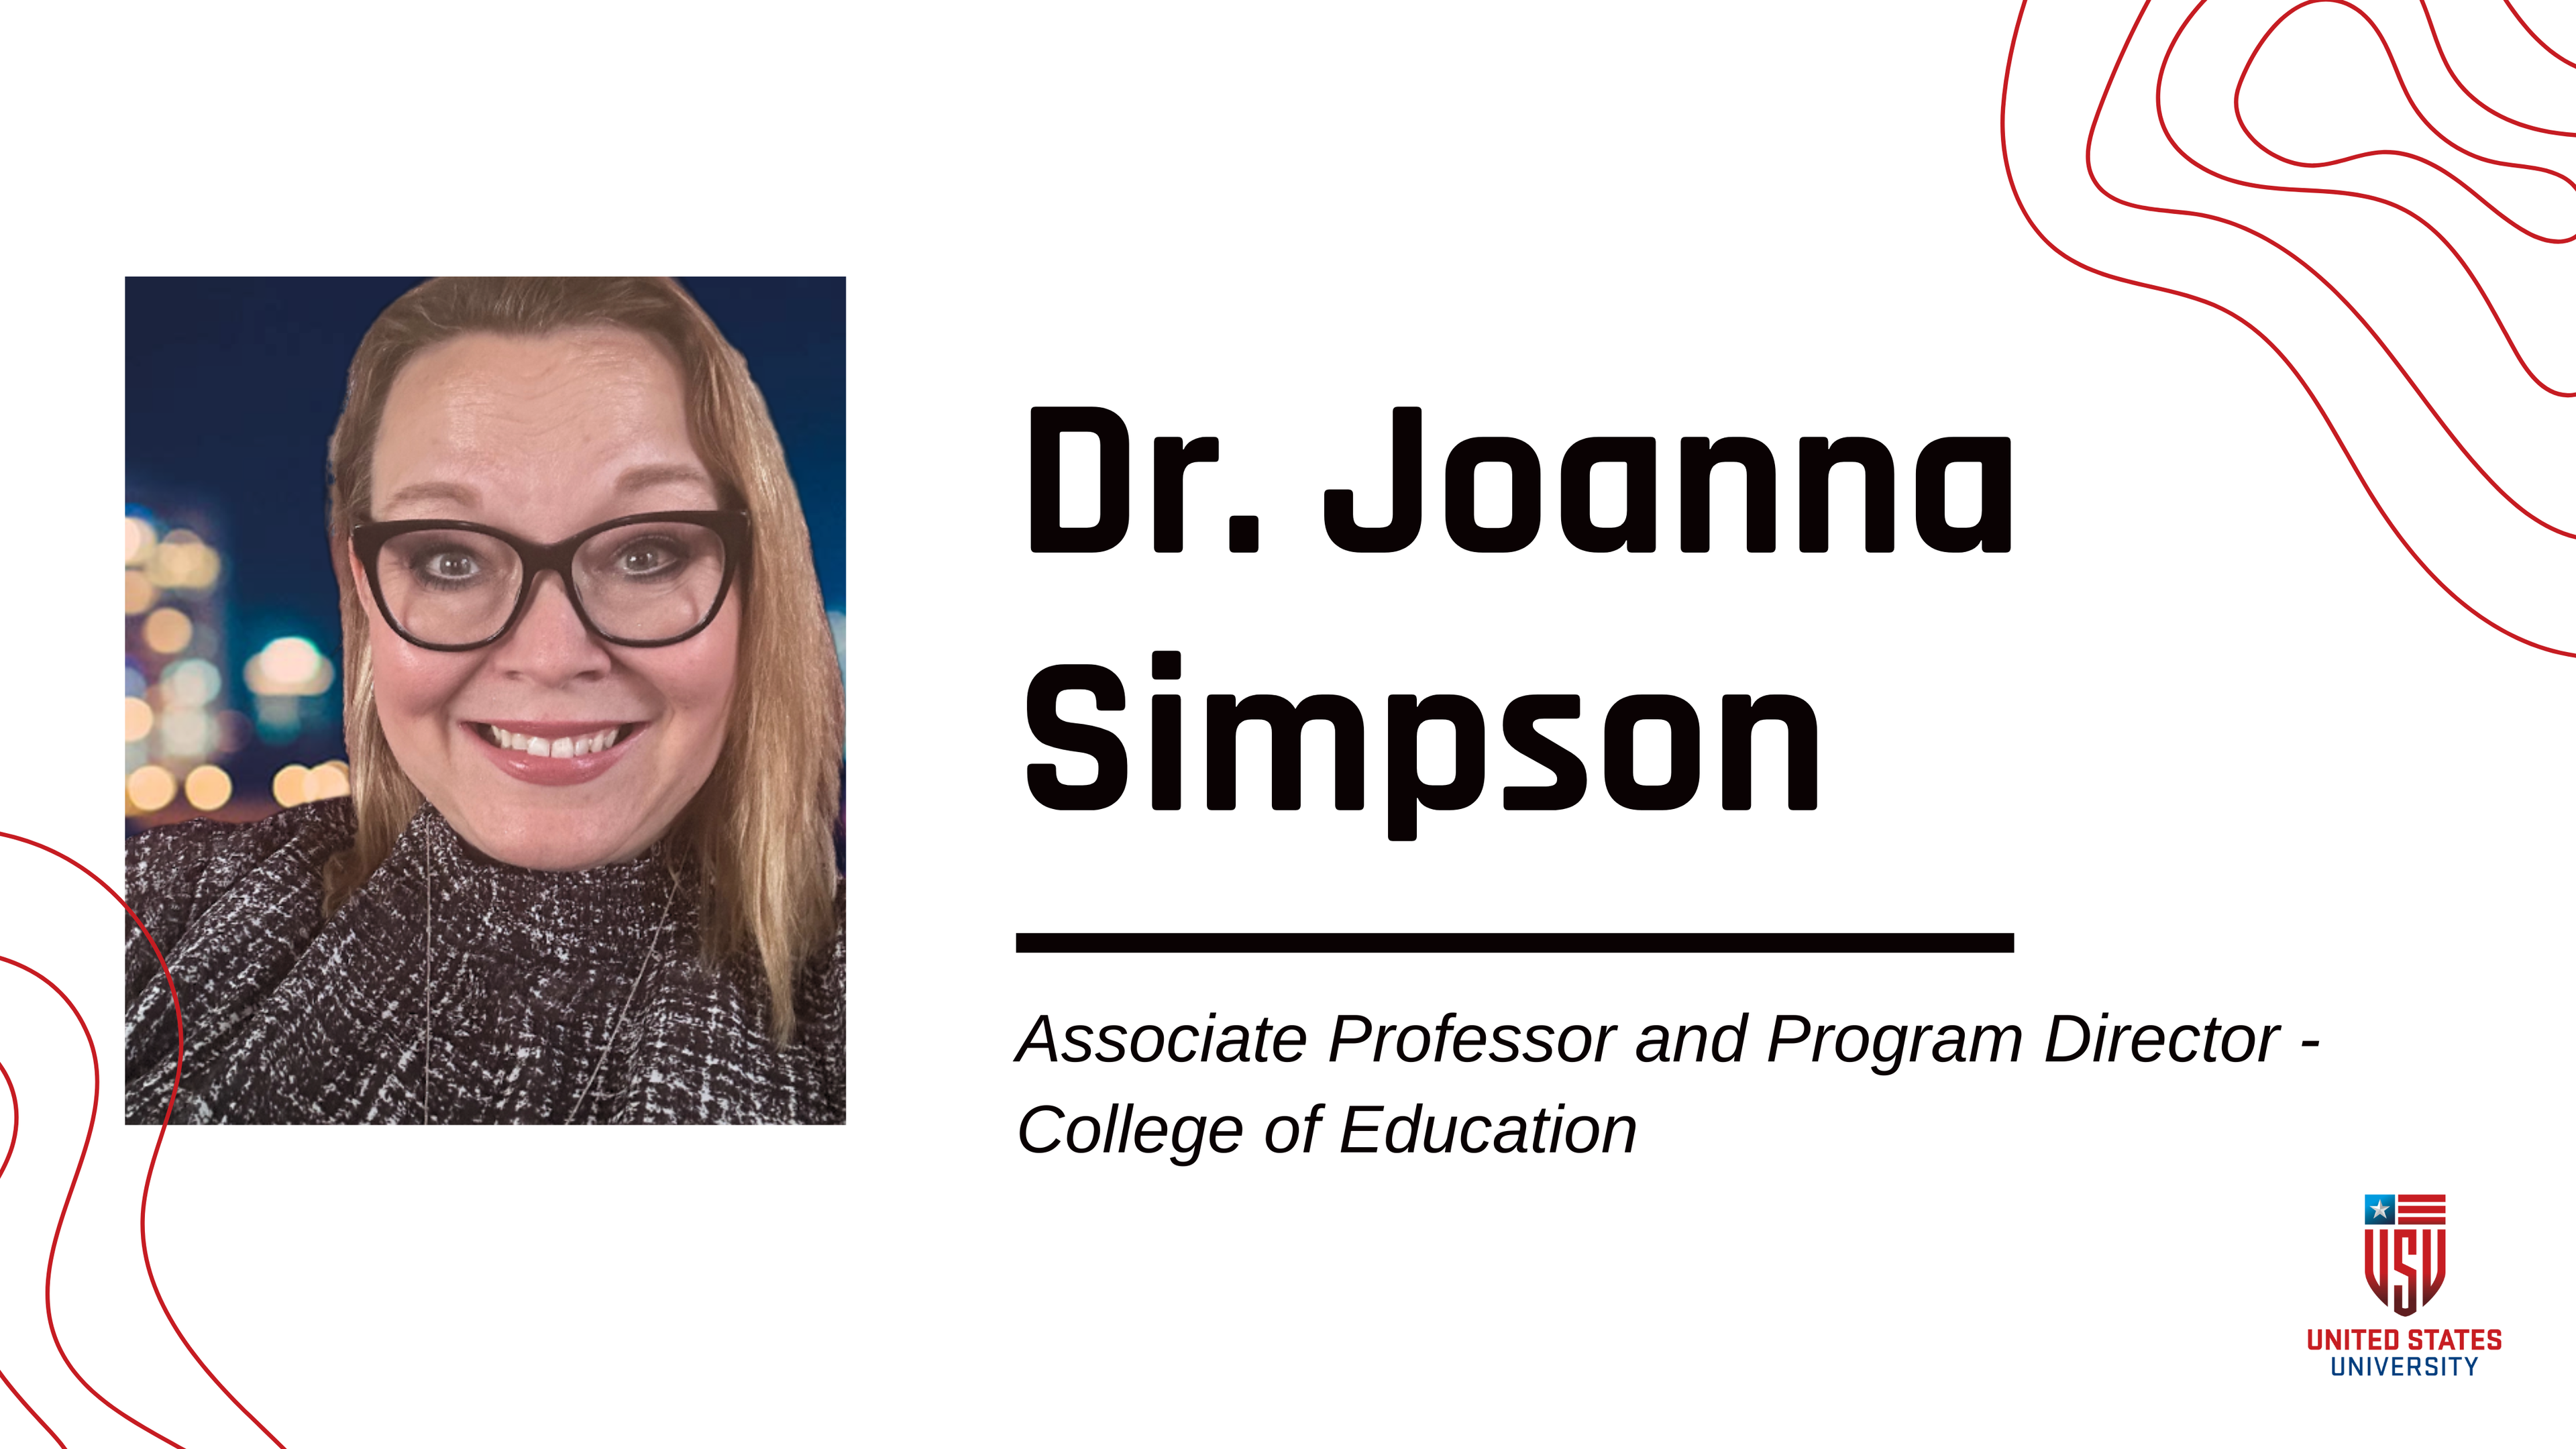 Dr. Joanna Simpson